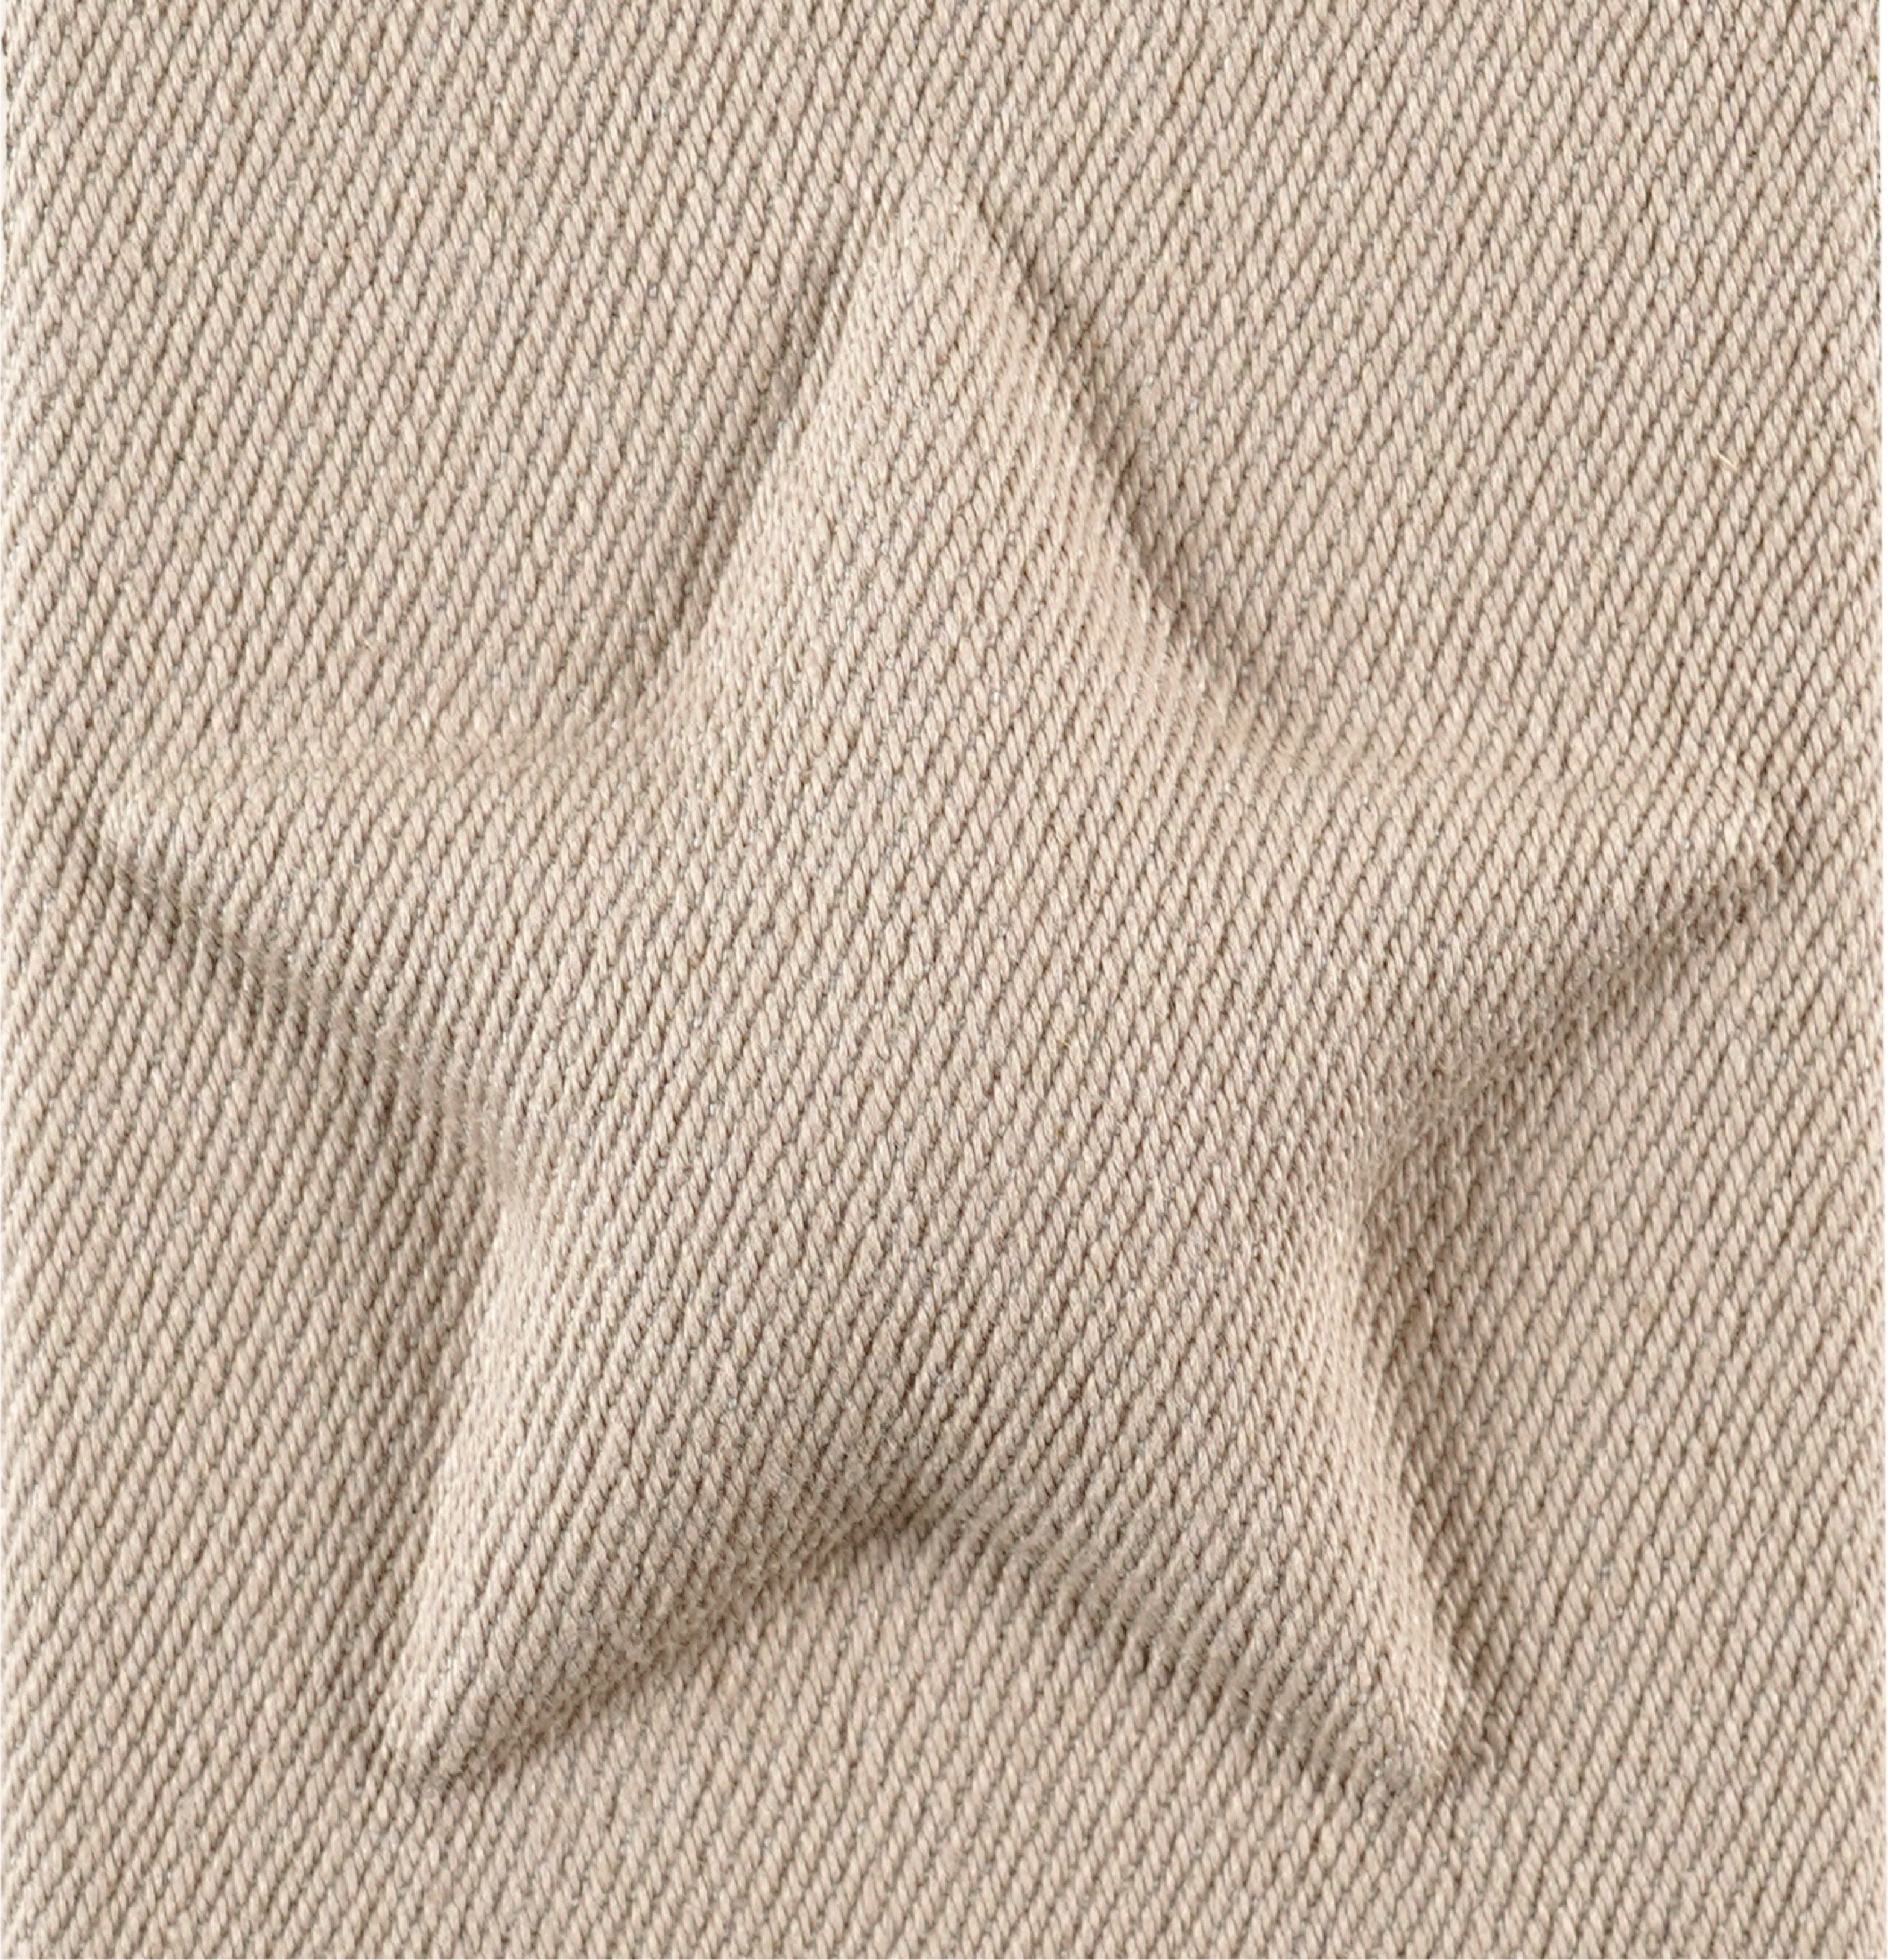 Star cushion case (beige)